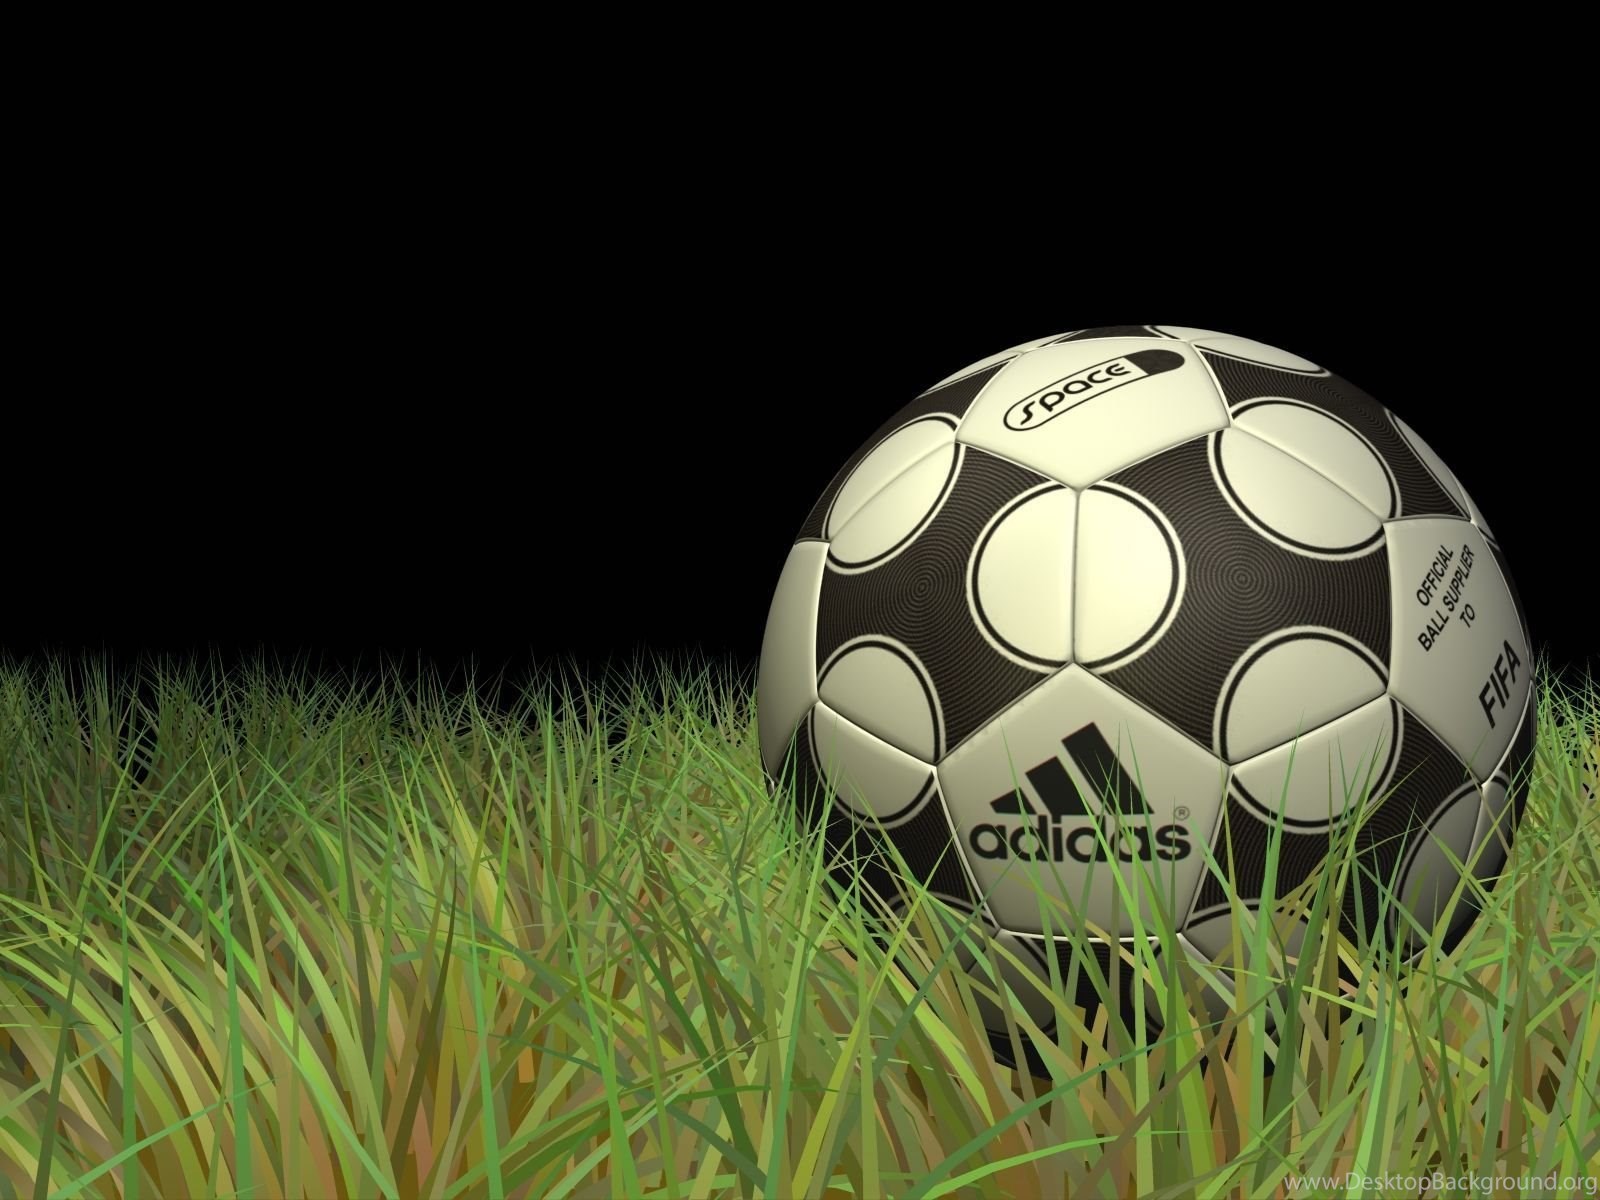 Top Adidas Soccer Wallpaper Image For Desktop Background